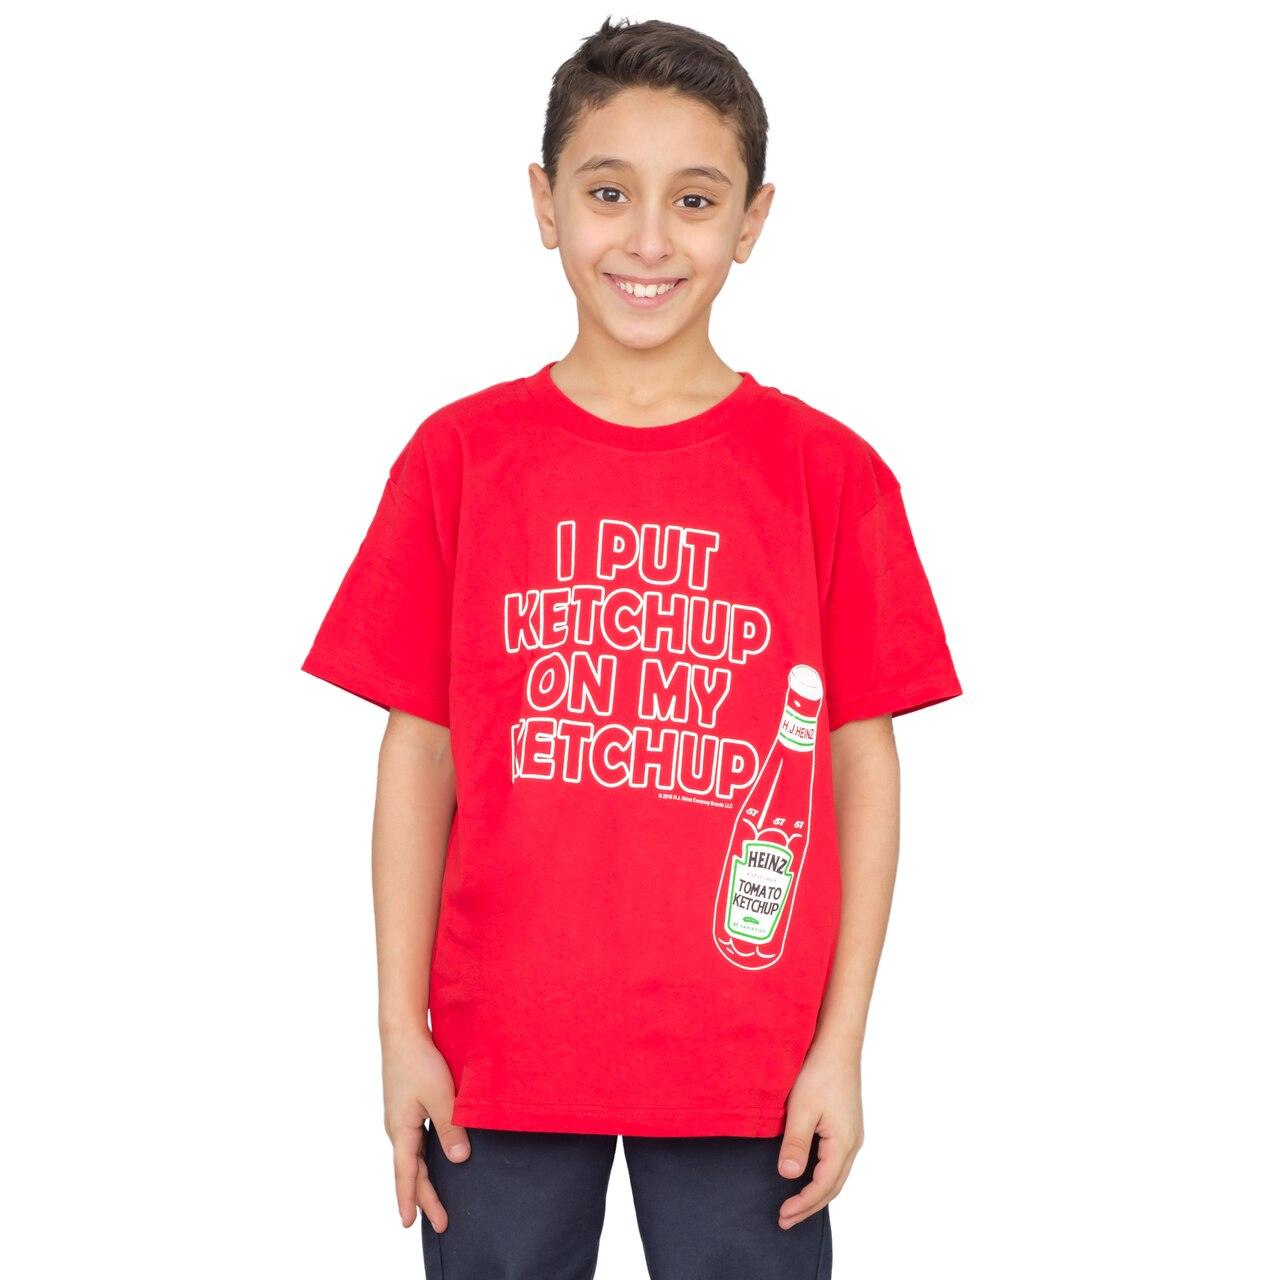 I Put Ketchup on My Ketchup Youth T-shirt-tvso